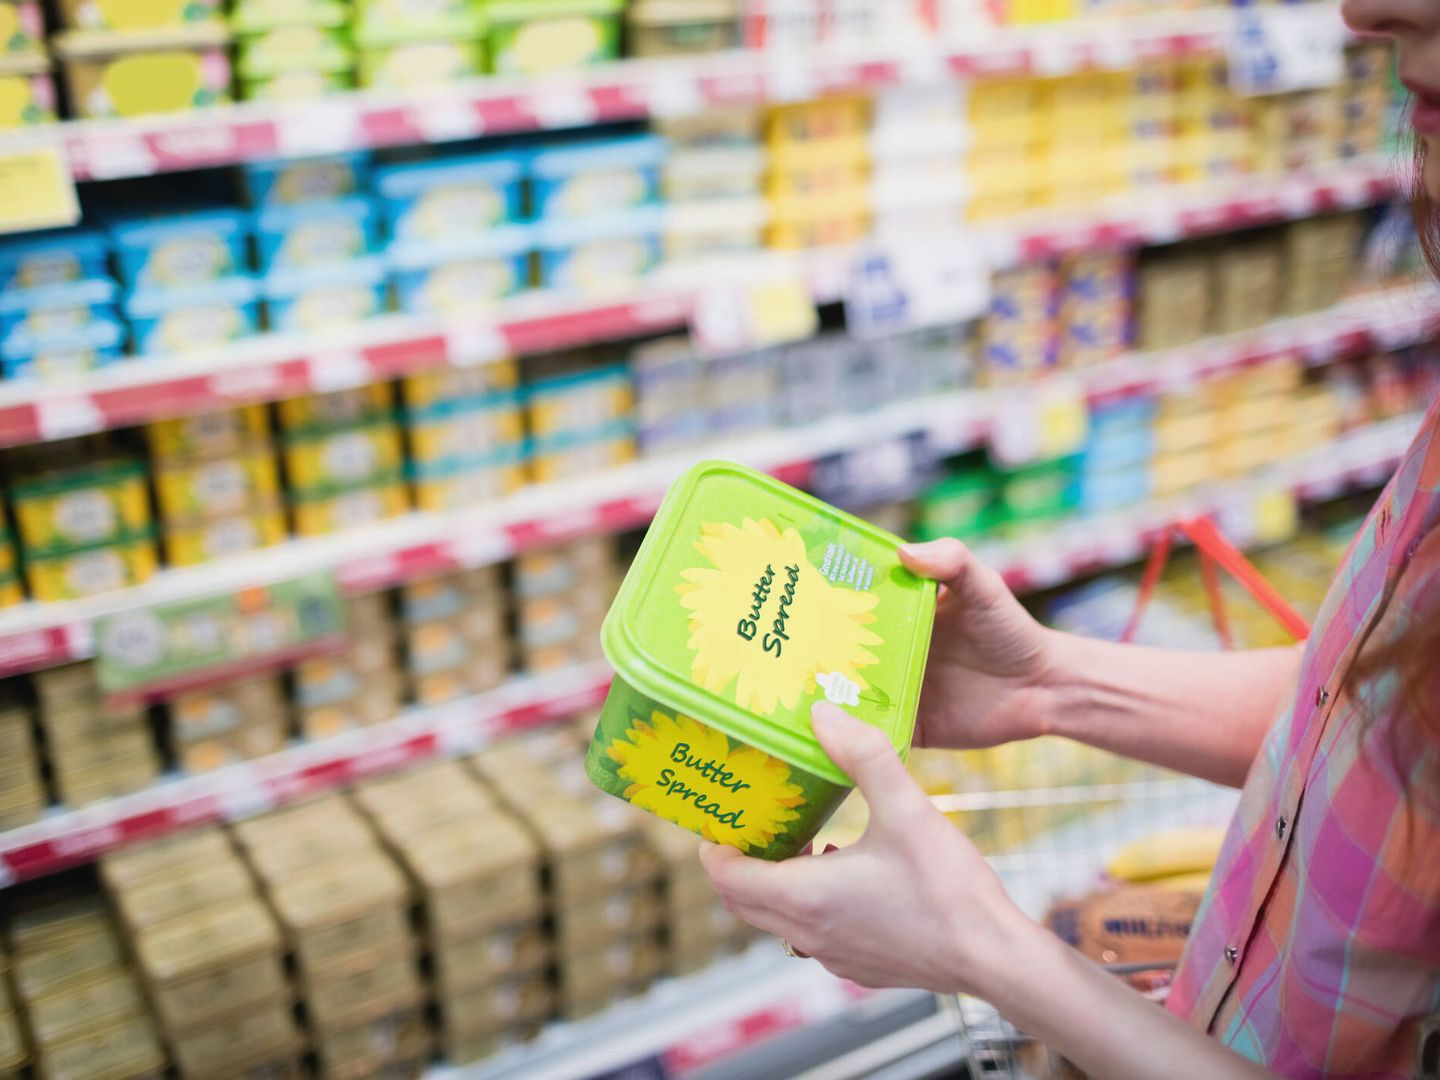 La estrategia del 'enriquecido en' es muy habitual en la venta de margarina. (iStock)